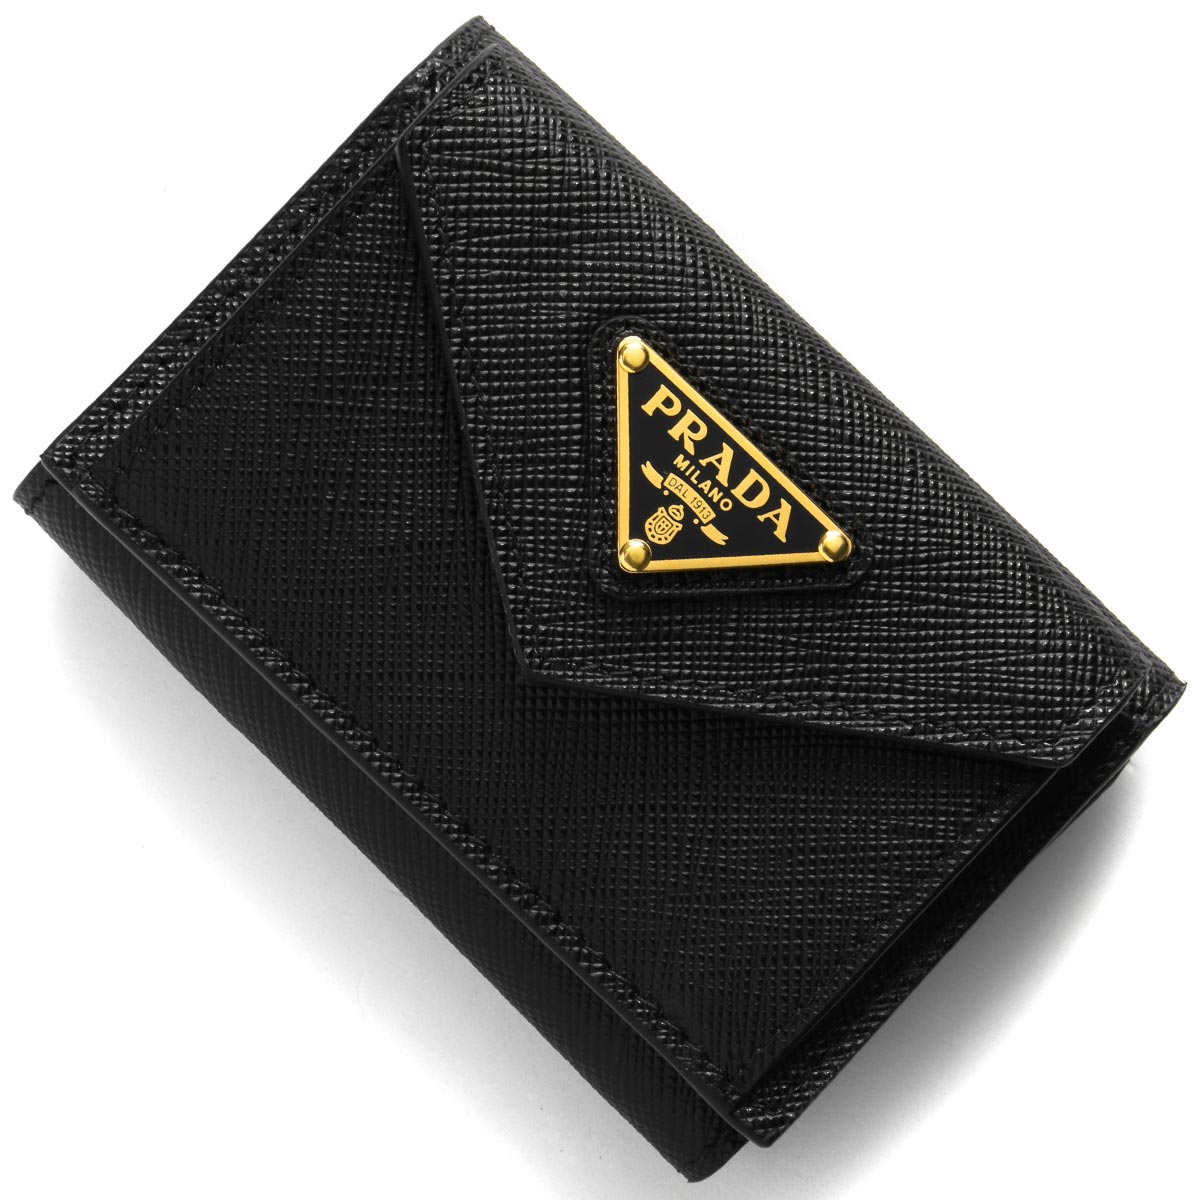 目玉商品 PRADA プラダ 三角ロゴ 三つ折り財布 ブラック 黒 